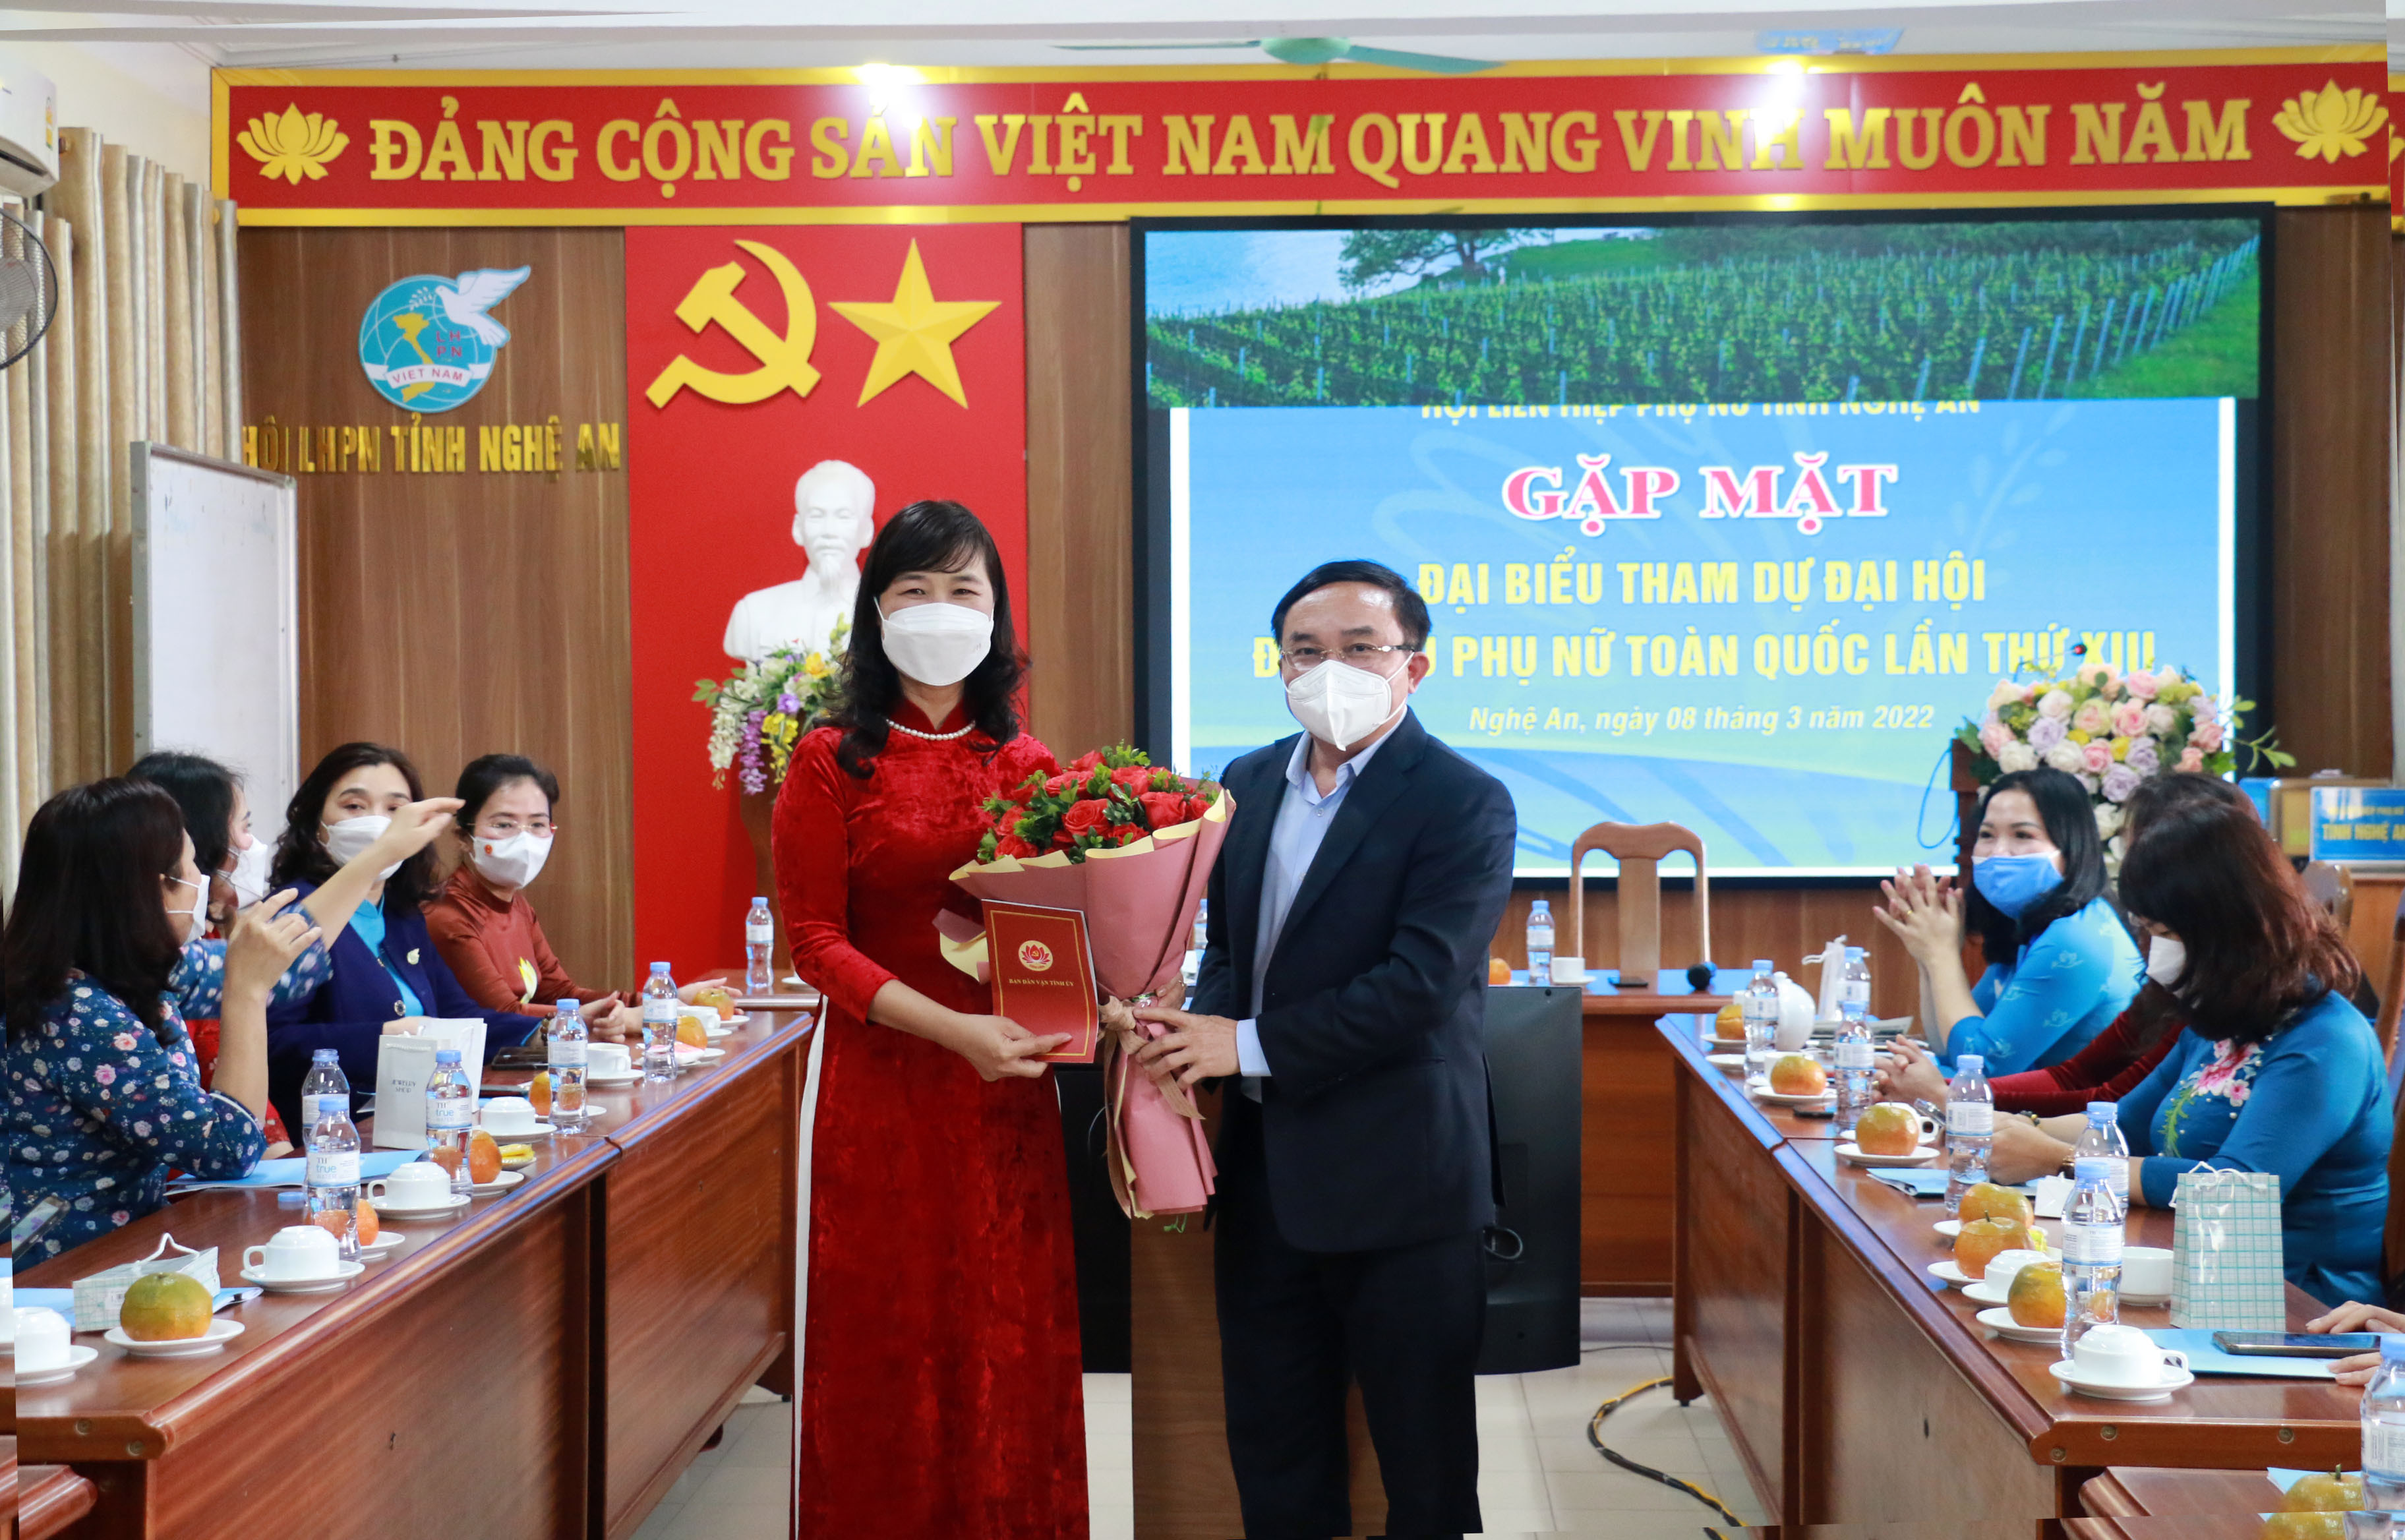 Đồng chí Ngọc Kin Nam tặng hoa chúc mừng Ngày Quốc tế Phụ nữ 8.3 cho các đại biểu. Ảnh: MH